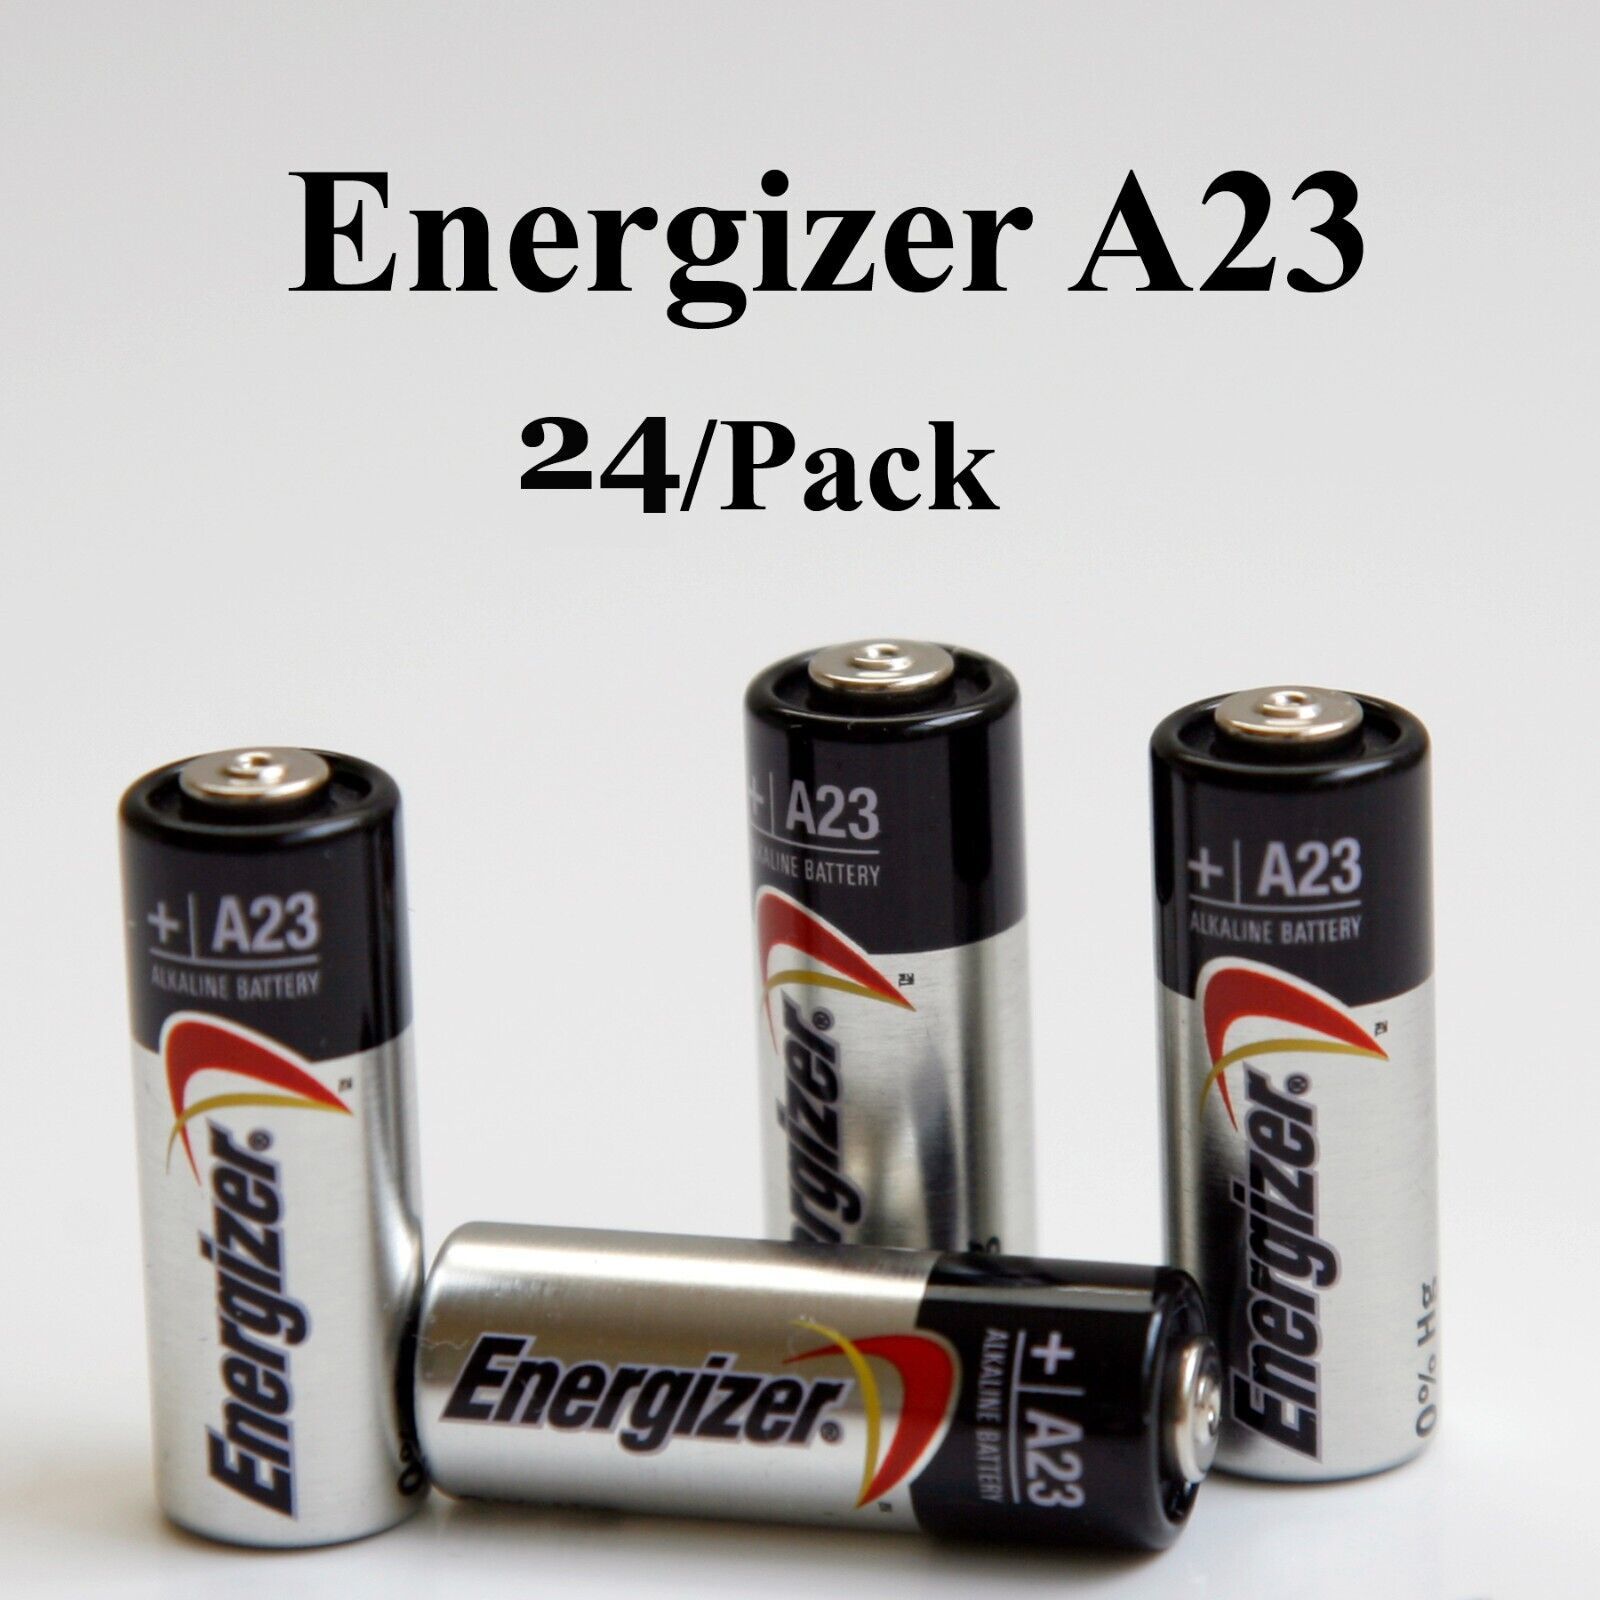 Energizer A23 12v Alkaline Batteries (Combo-Pack) 24/Pack - $29.66